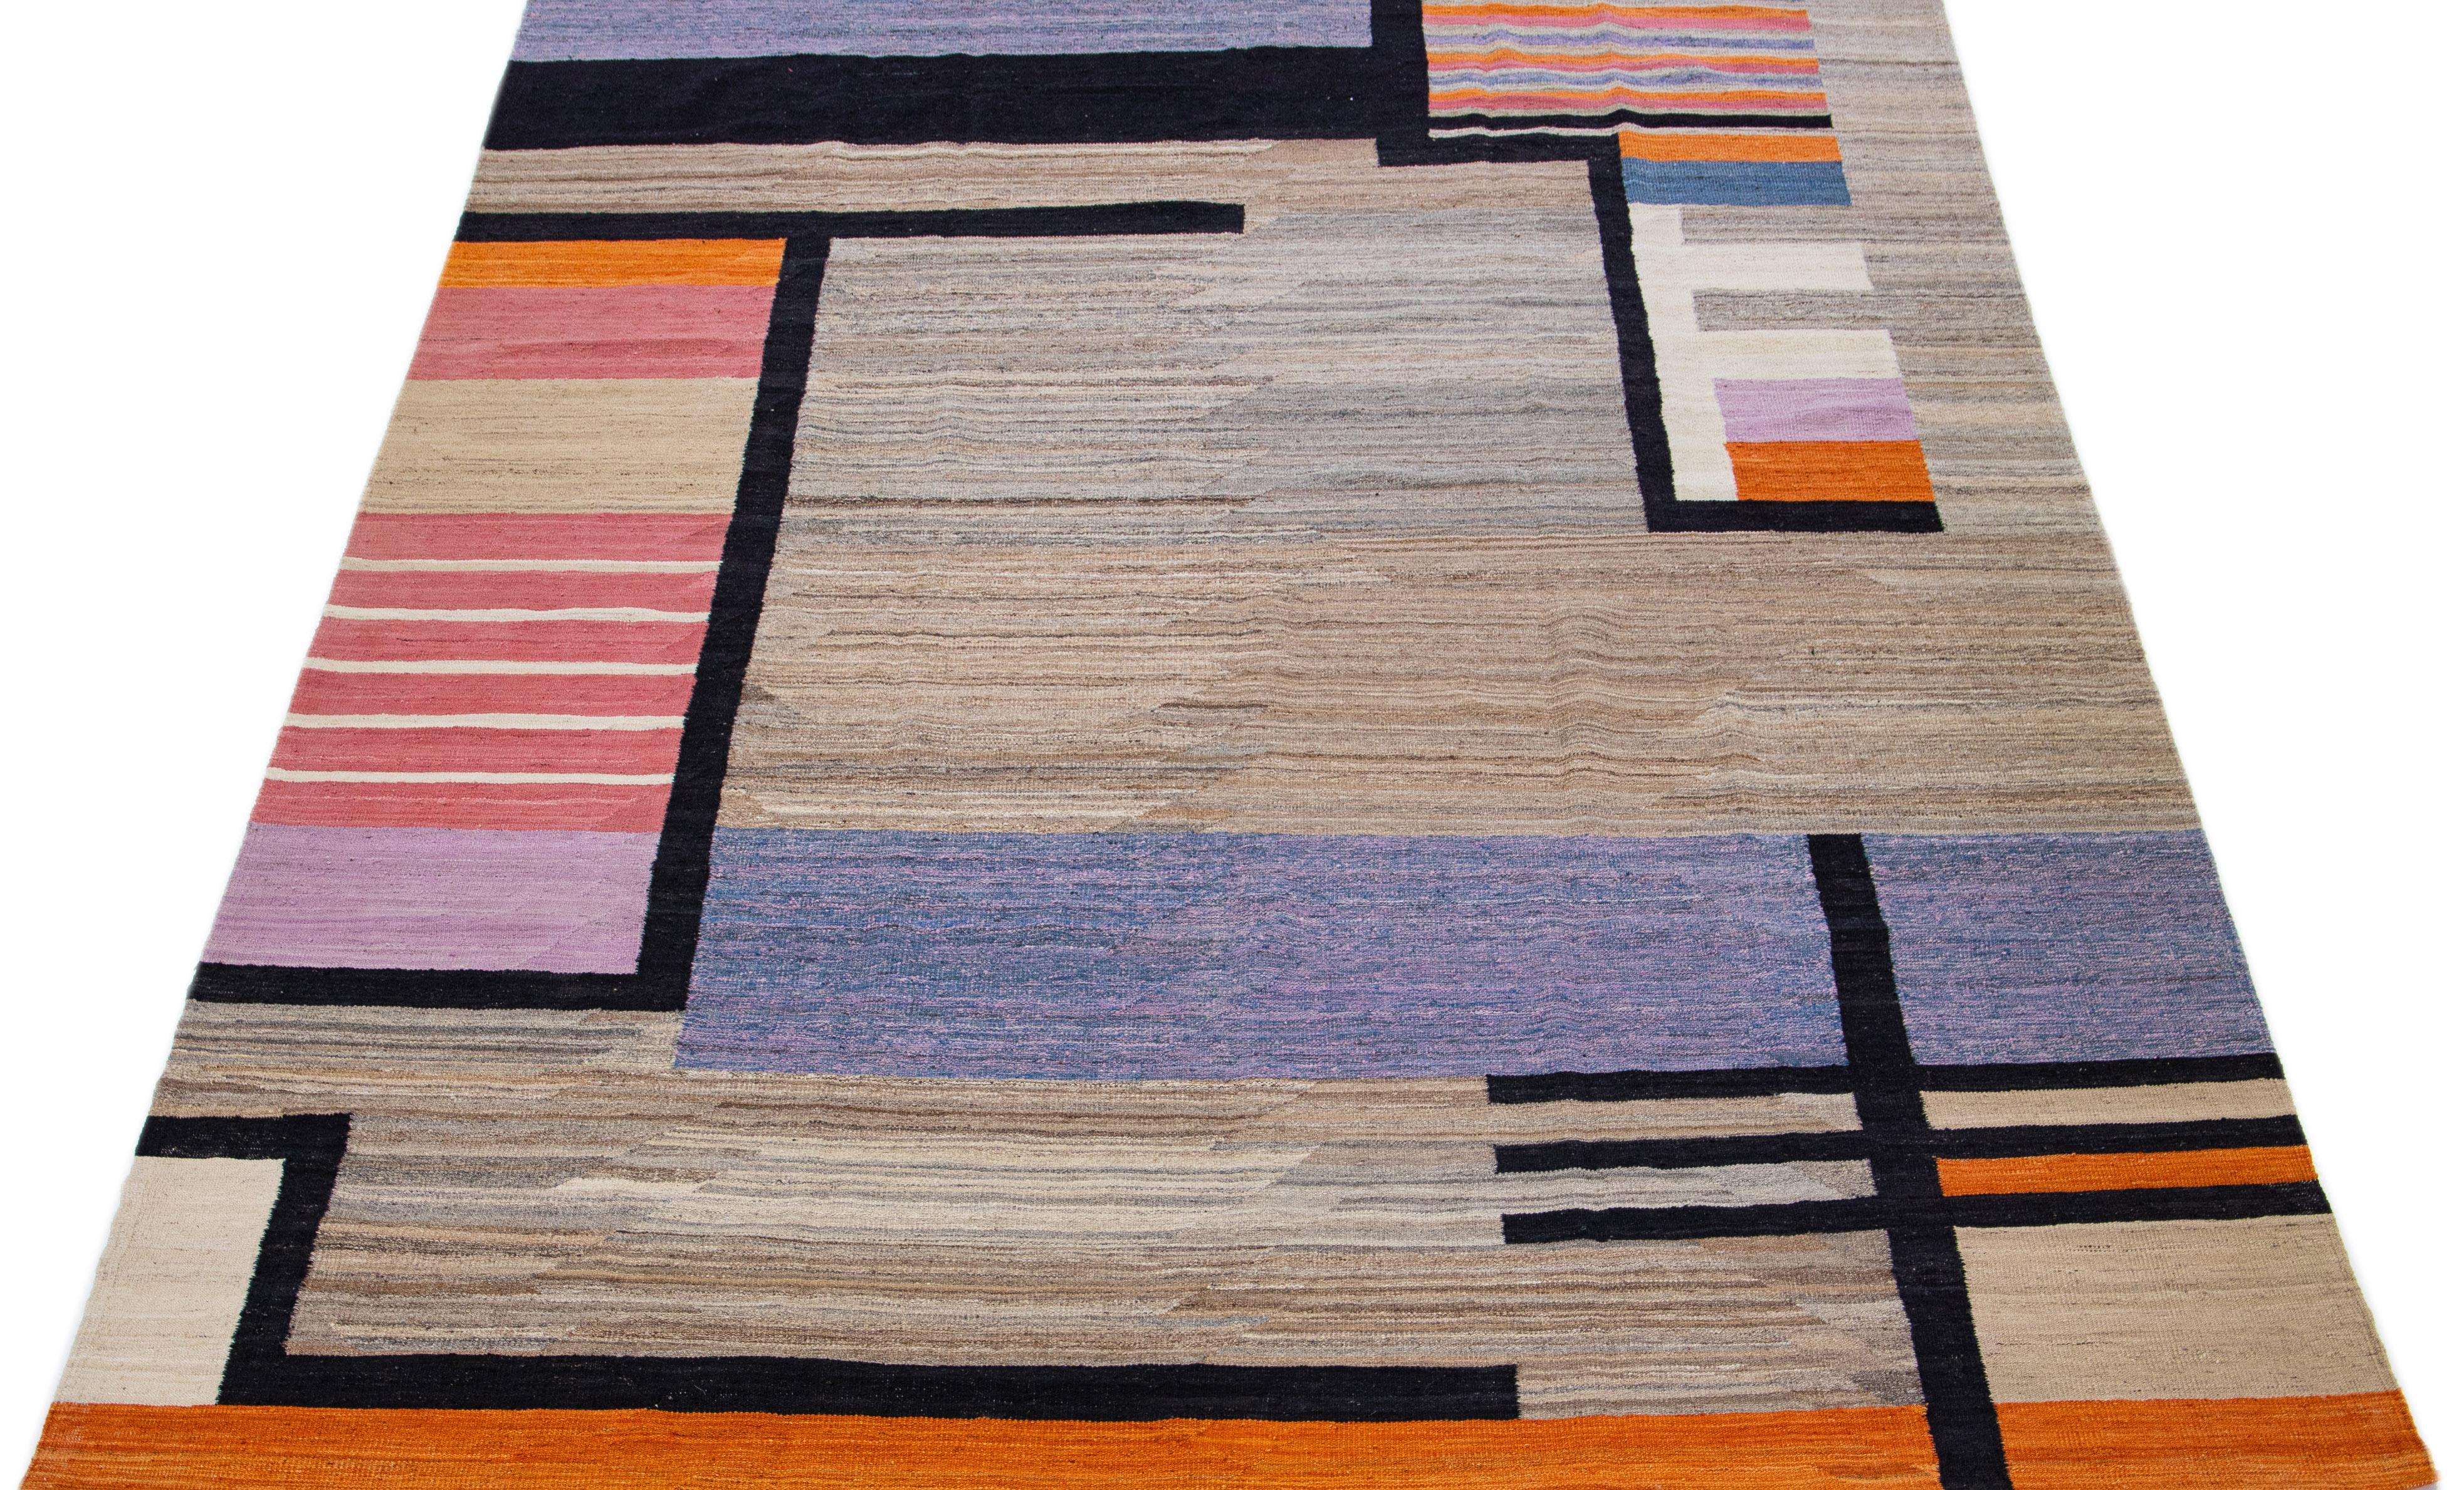 
Ce tapis en laine à tissage plat Deco présente un champ marron captivant avec des accents orange, noirs et violets, créant un effet contemporain et esthétiquement plaisant. Son design complexe et vibrant se combine pour créer une pièce maîtresse